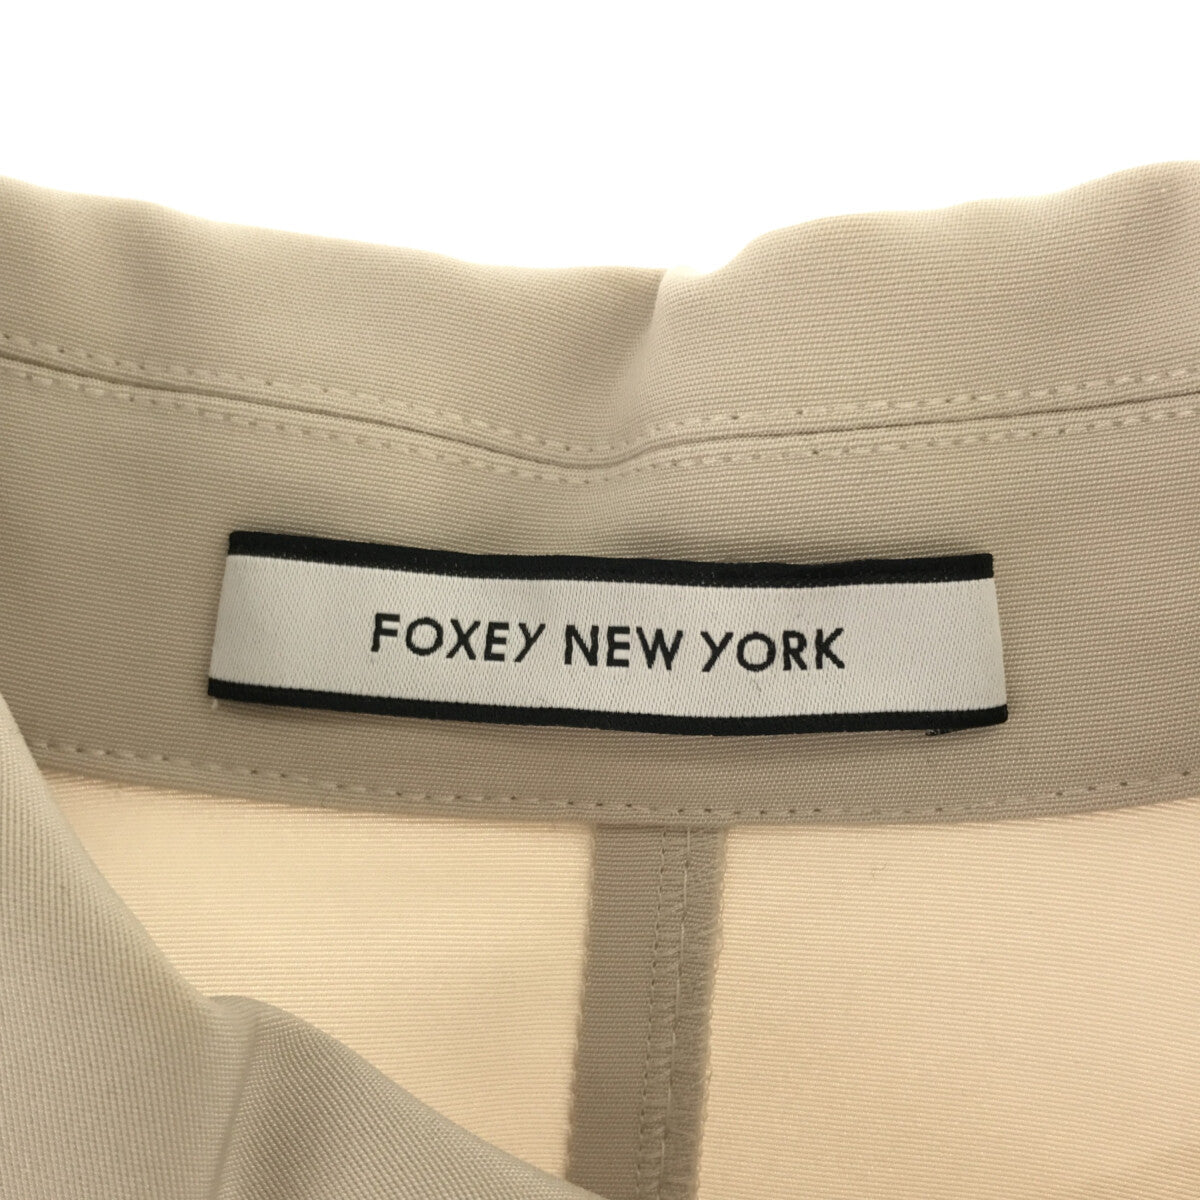 素材合成皮革【良品】FOXEY NEW YORK ライダースジャケット ベージュ 38